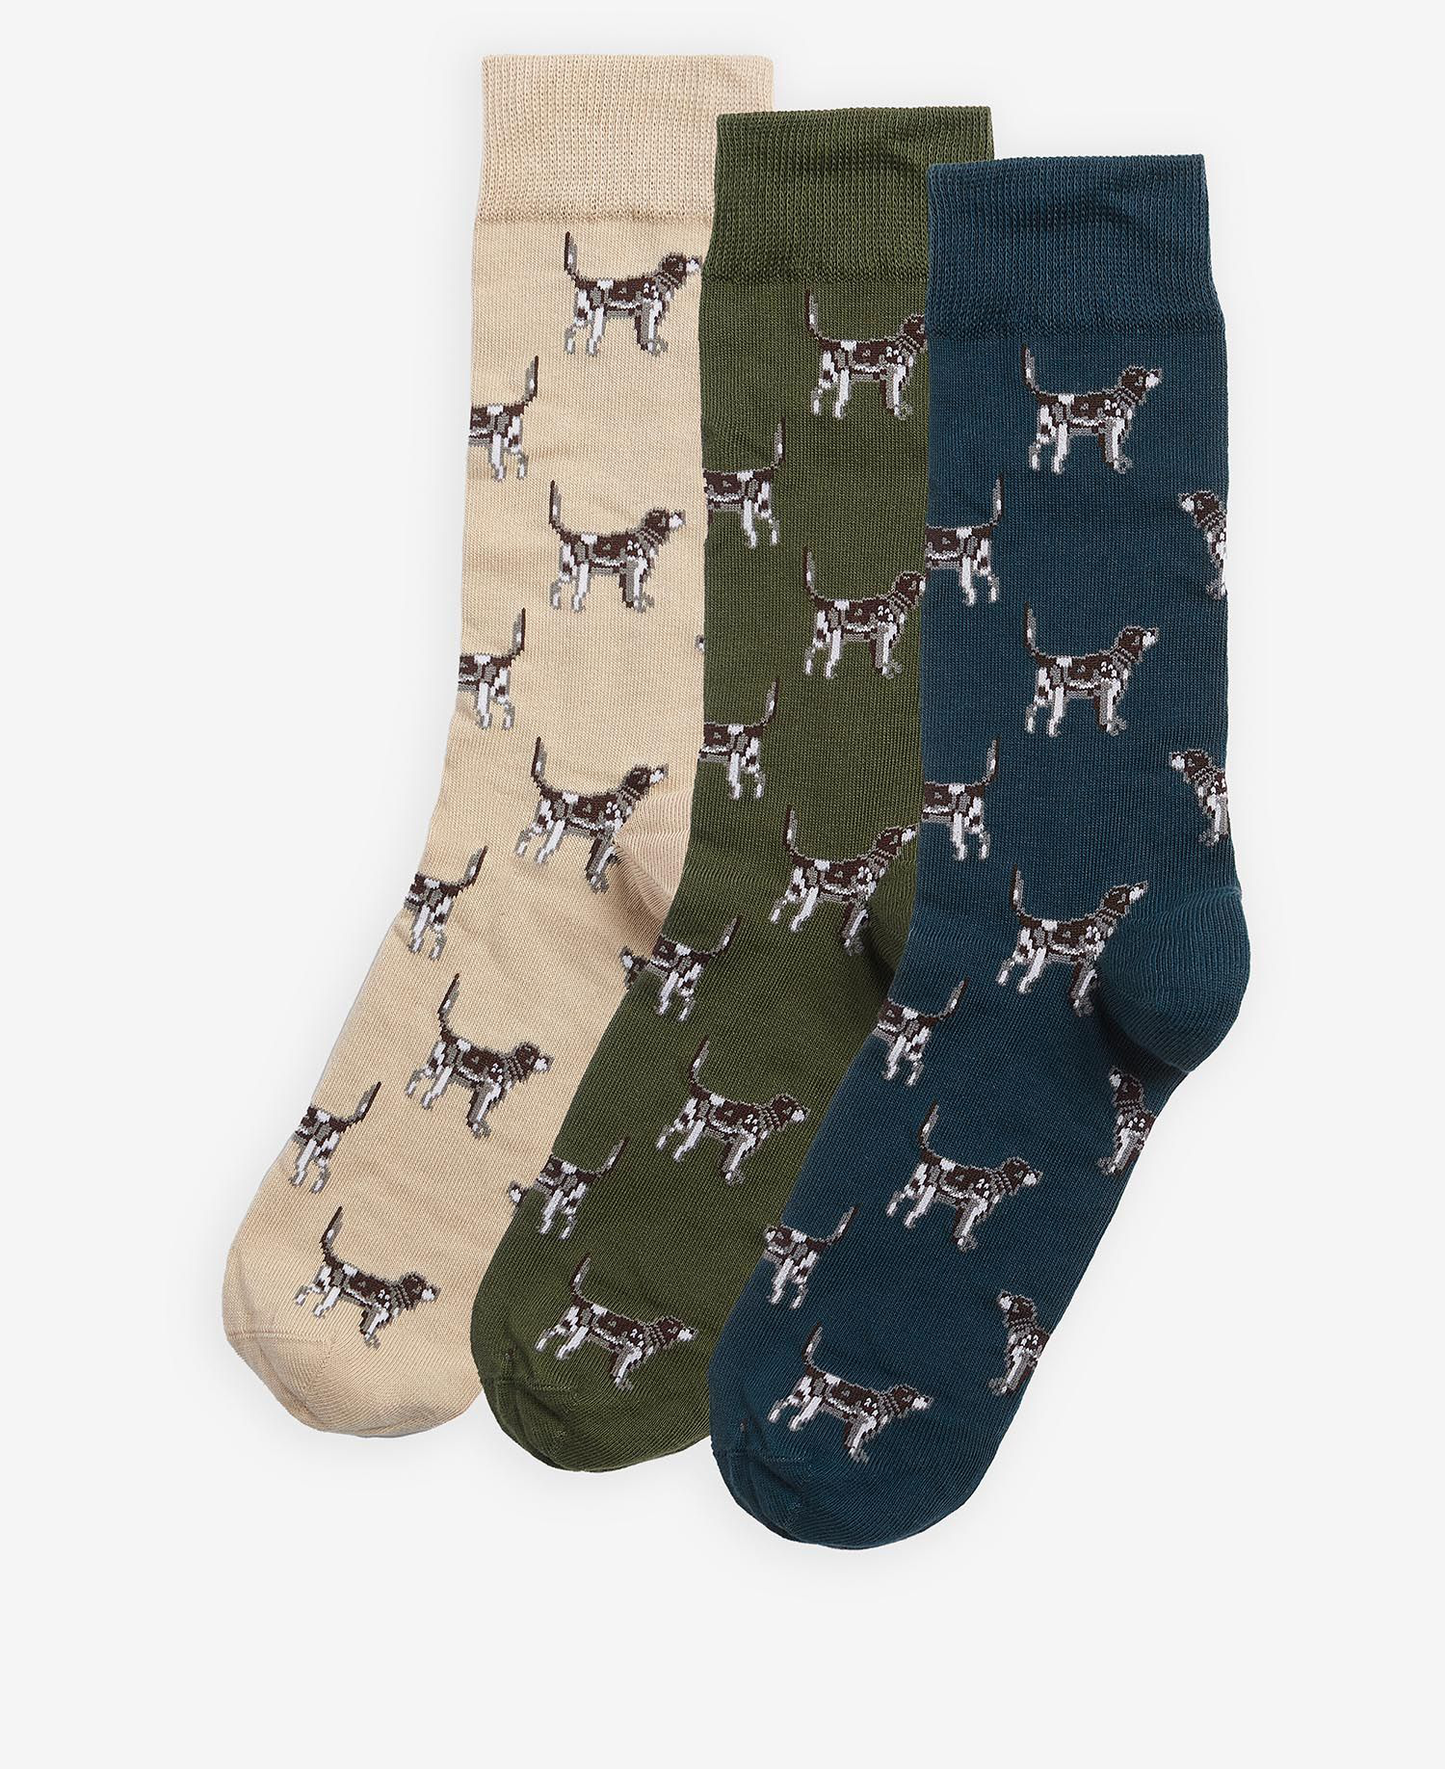 Pointer Dog Socks Gift Box - Rivers & Glen Trading Co.